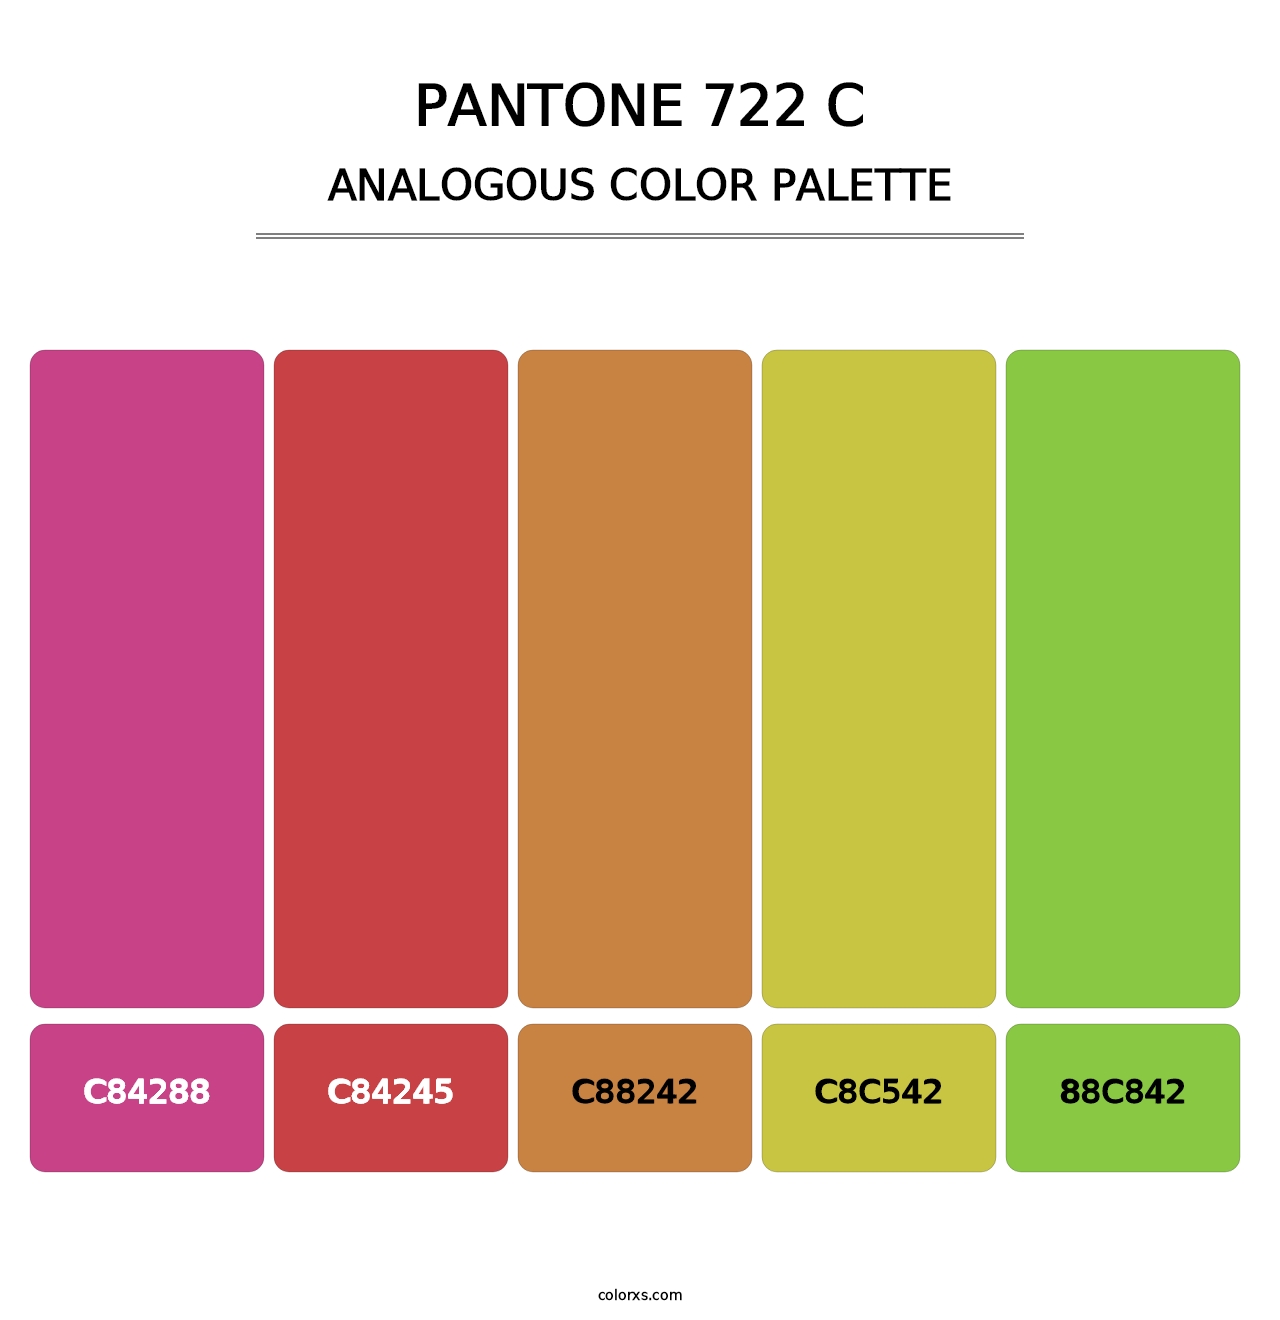 PANTONE 722 C - Analogous Color Palette